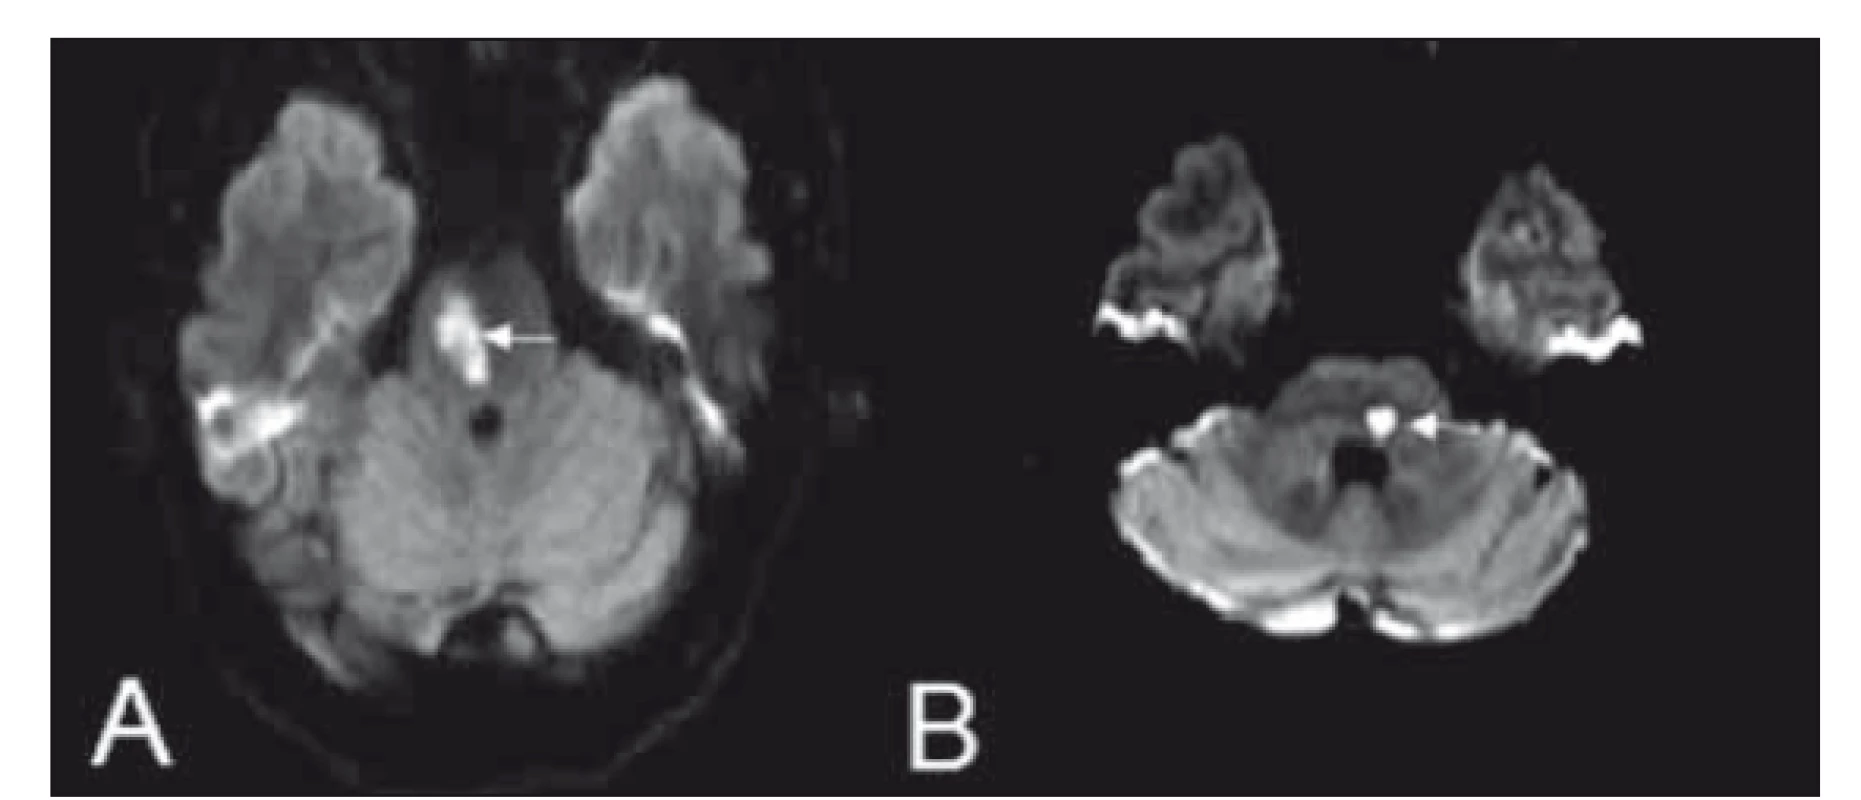 (A) Millard-Gublerův syndrom a (B) laterální střední pontinní
syndrom na difuzí vážených obrazech MR.<br>
Fig. 7. Diff usion weighted MRI showing images of Millard-Gubler
syndrome (A) and lateral middle pontine syndrome (B).